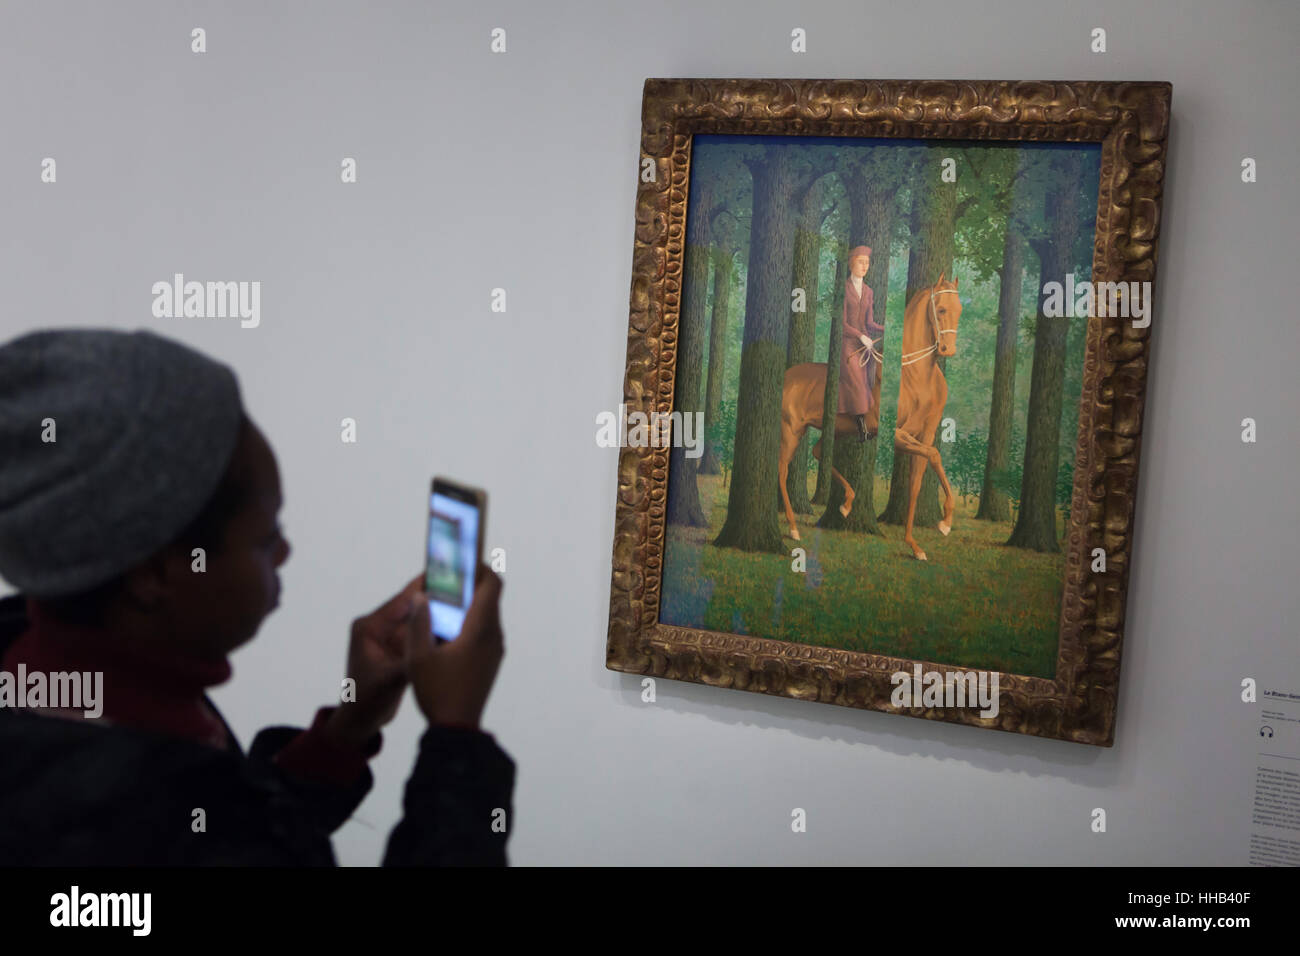 Visiteur utilise son smartphone pour photographier le tableau Le Blanc-Seing  (la signature en blanc, 1965) par l'artiste surréaliste belge René Magritte  affichée à son exposition rétrospective au Centre Pompidou à Paris, France.